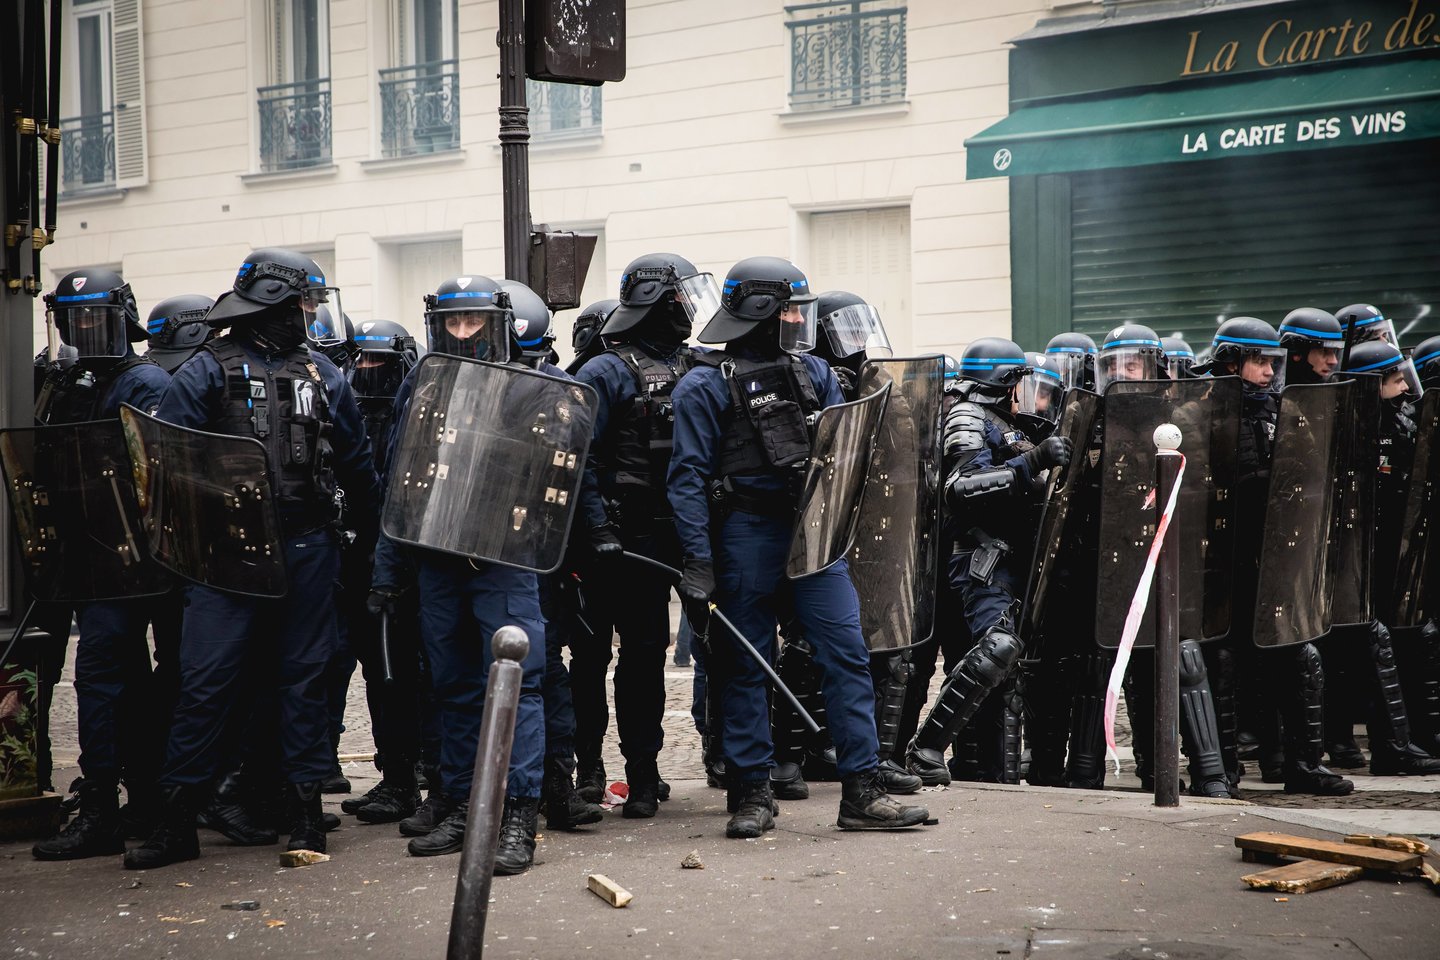 Prancūzijoje protestuodami prieš siūlomą pensijų reformą ketvirtadienį demonstracijose dalyvavo daugiau kaip milijonas žmonių, kai kurie demonstrantai Paryžiuje susirėmė su policija, o streikai sutrikdė viešojo transporto, mokyklų ir didžiosios dalies valstybės tarnybos darbą.<br>Sipa Press/Scanpix nuotr.